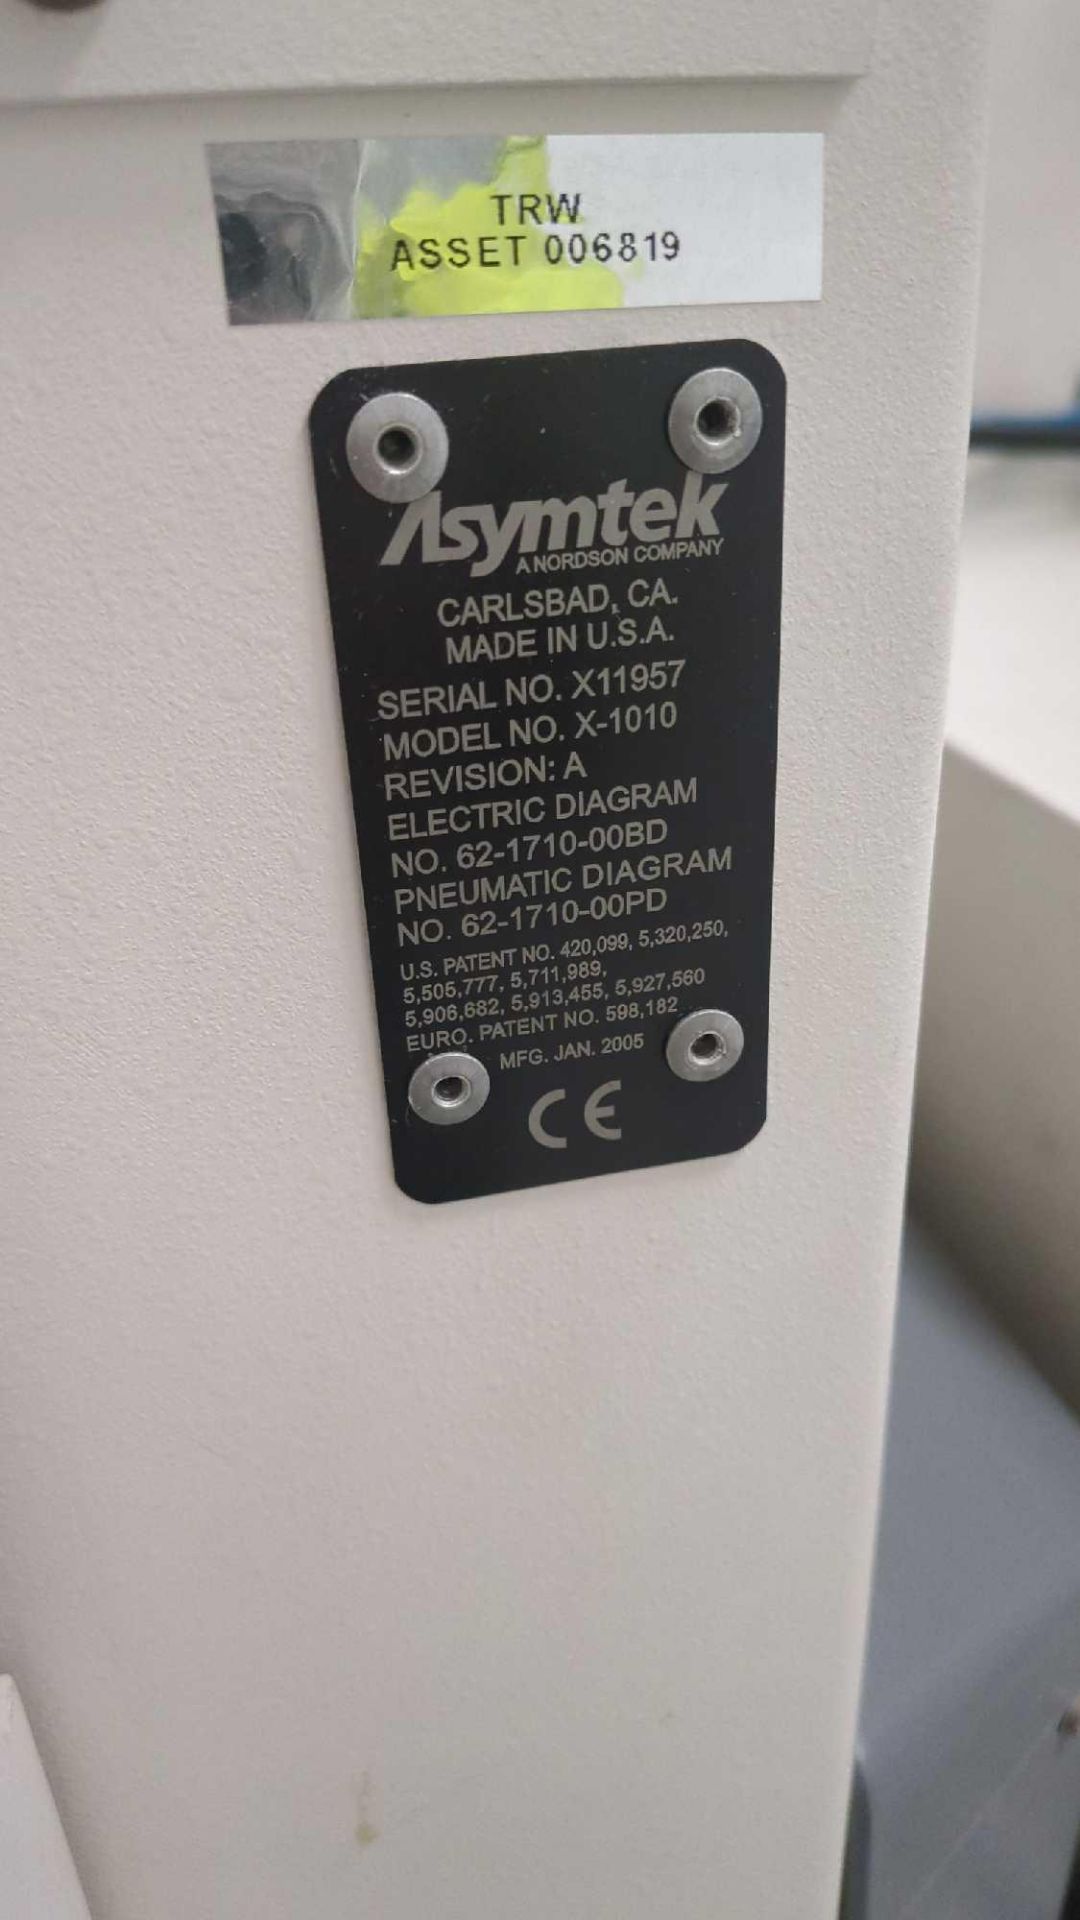 Asymtek, X-1010, Dispensing Machine - Image 6 of 6